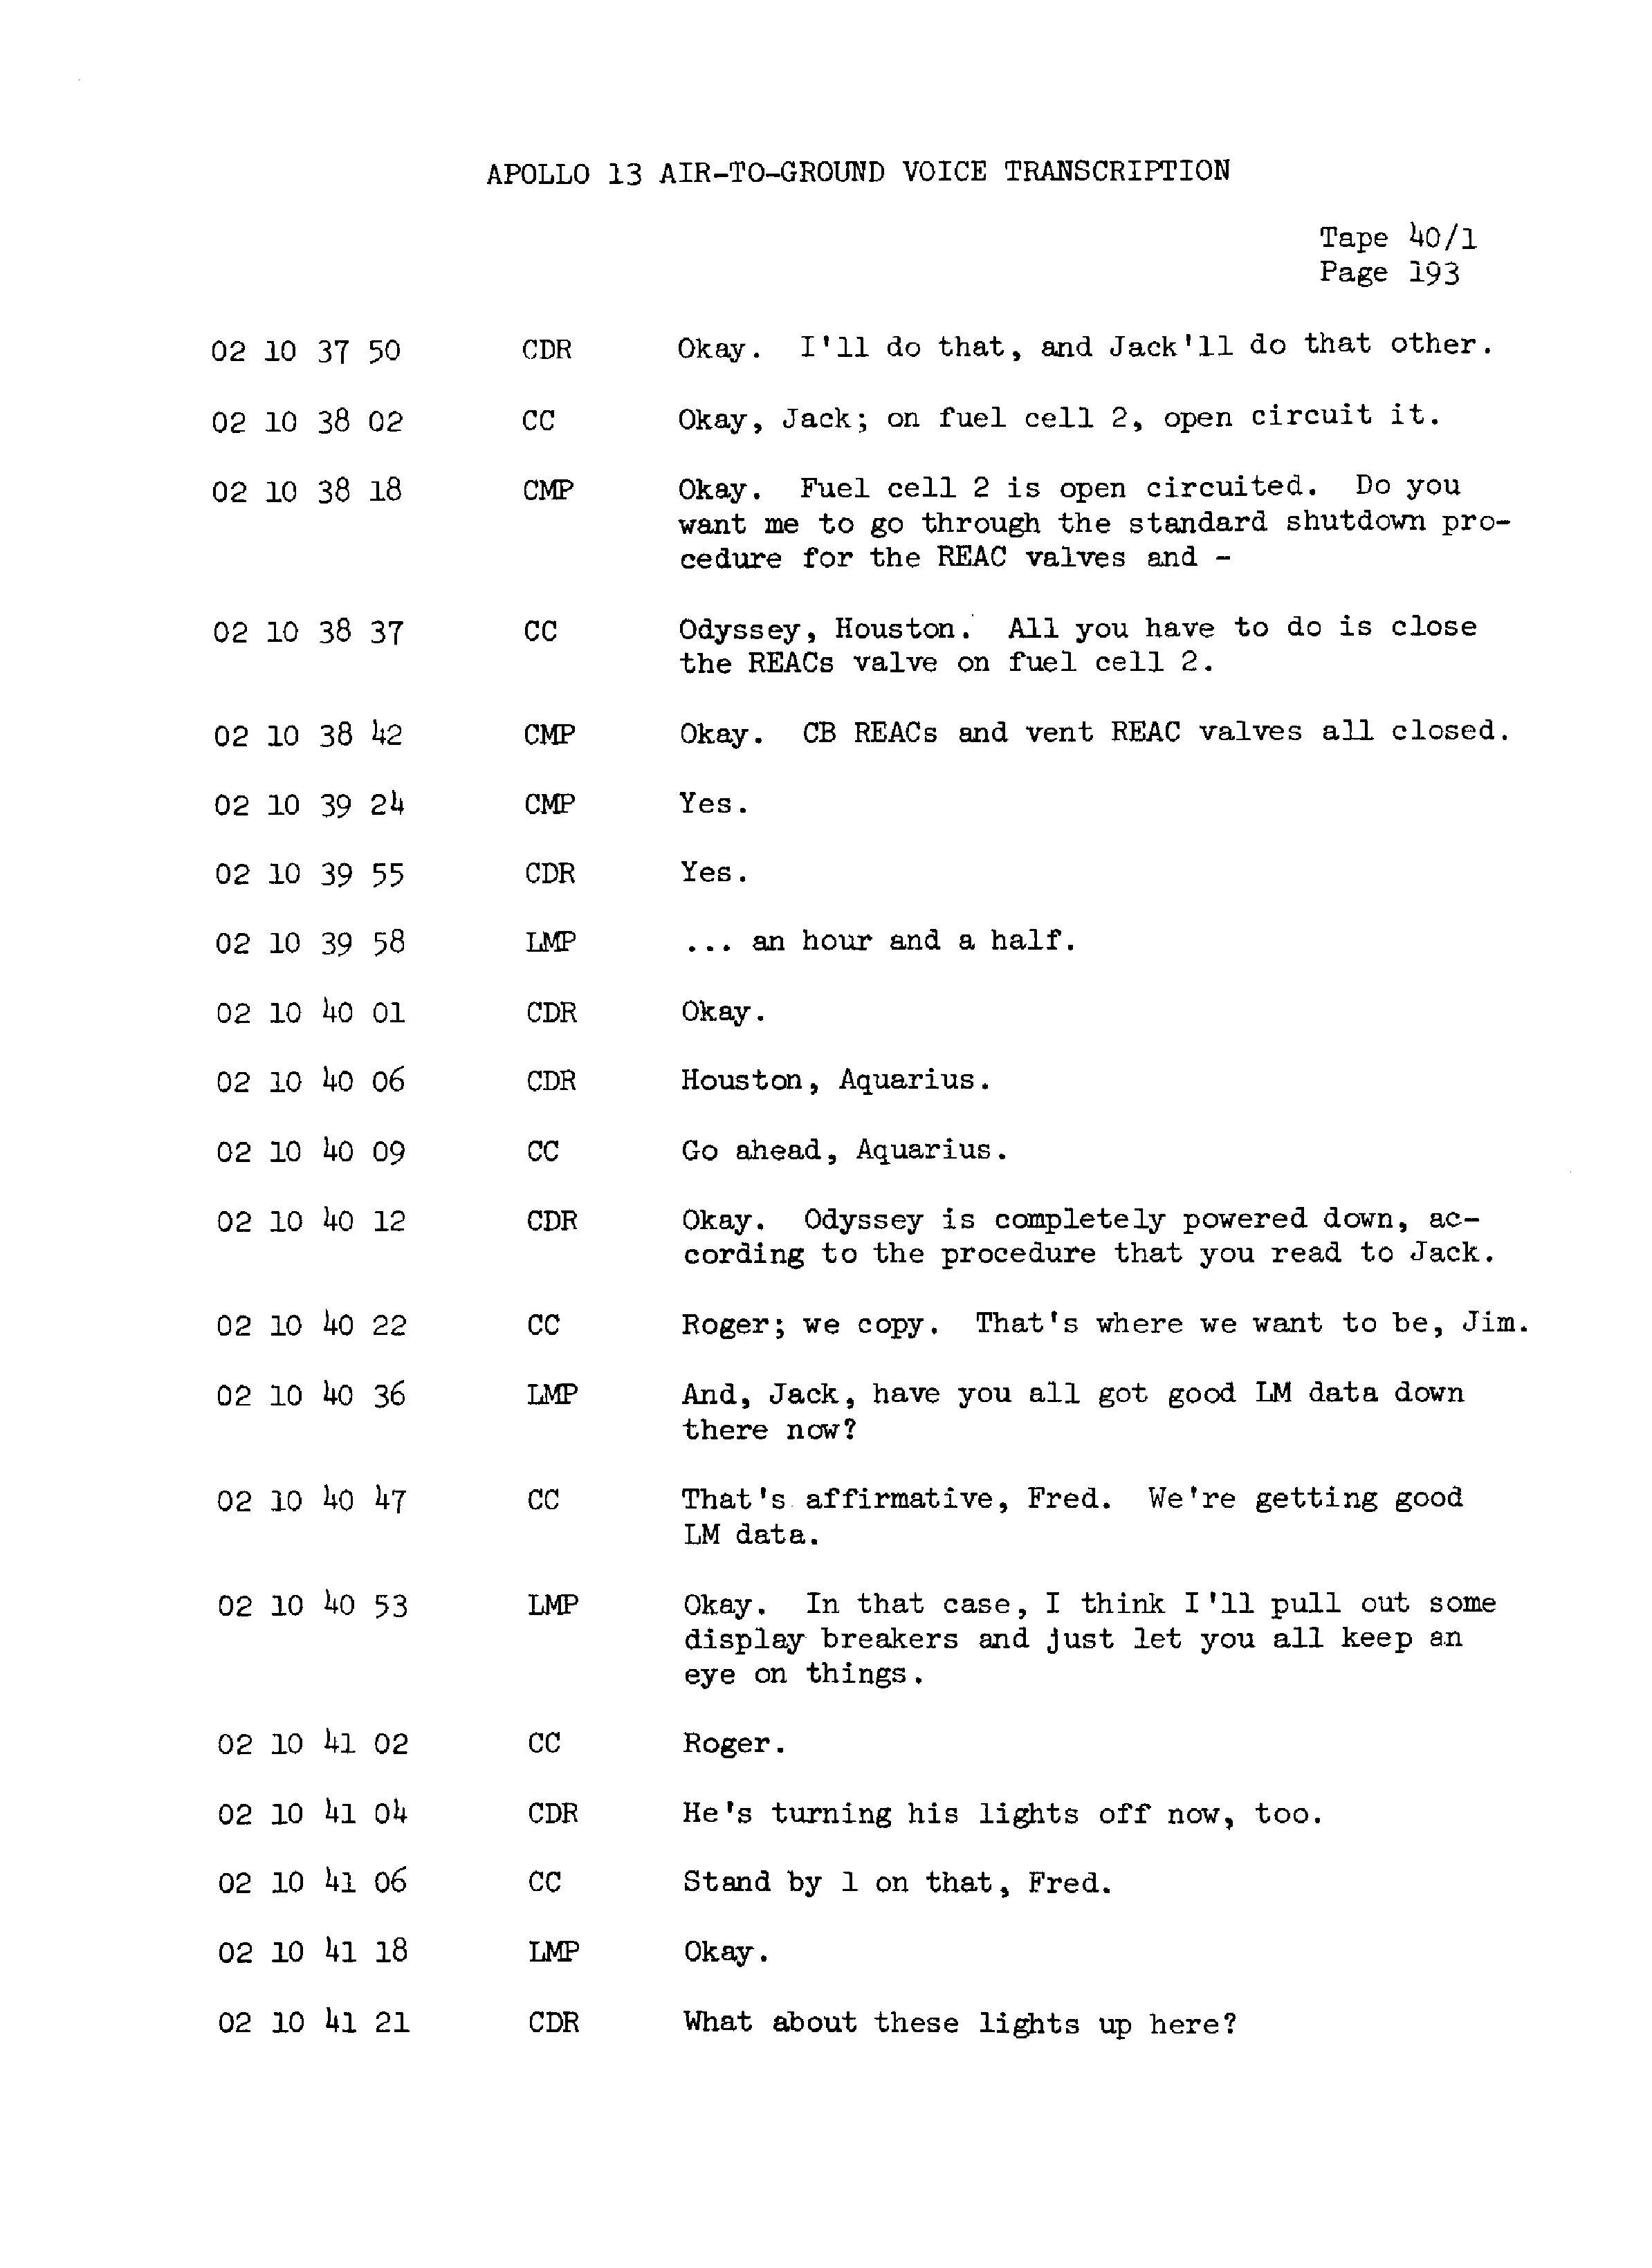 Page 200 of Apollo 13’s original transcript